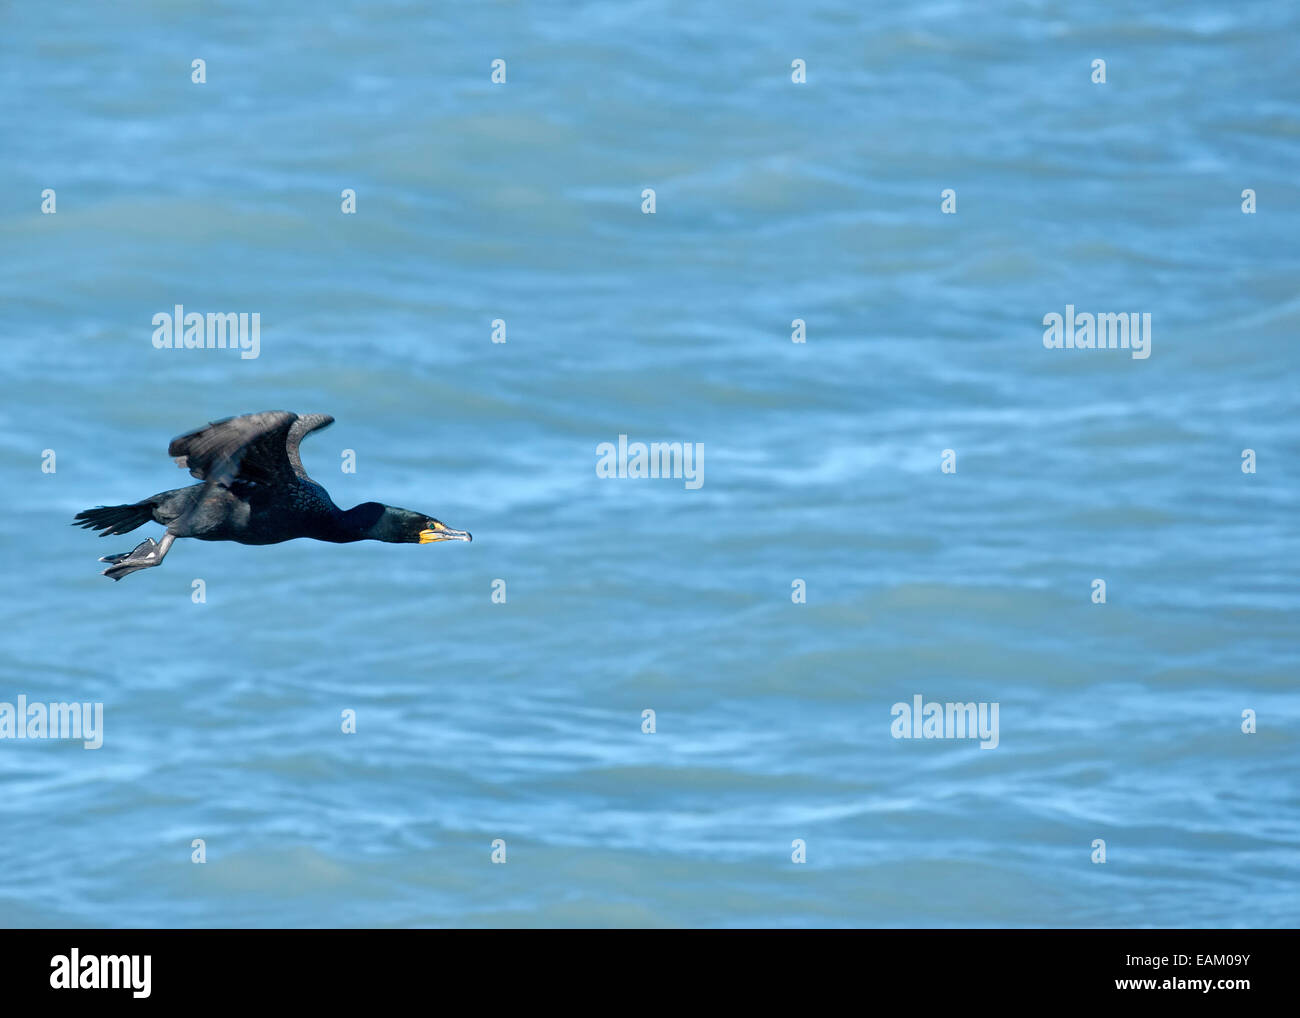 Canard noir pris en vol pendant une fraction de seconde - Résurrection Bay en Alaska. Banque D'Images